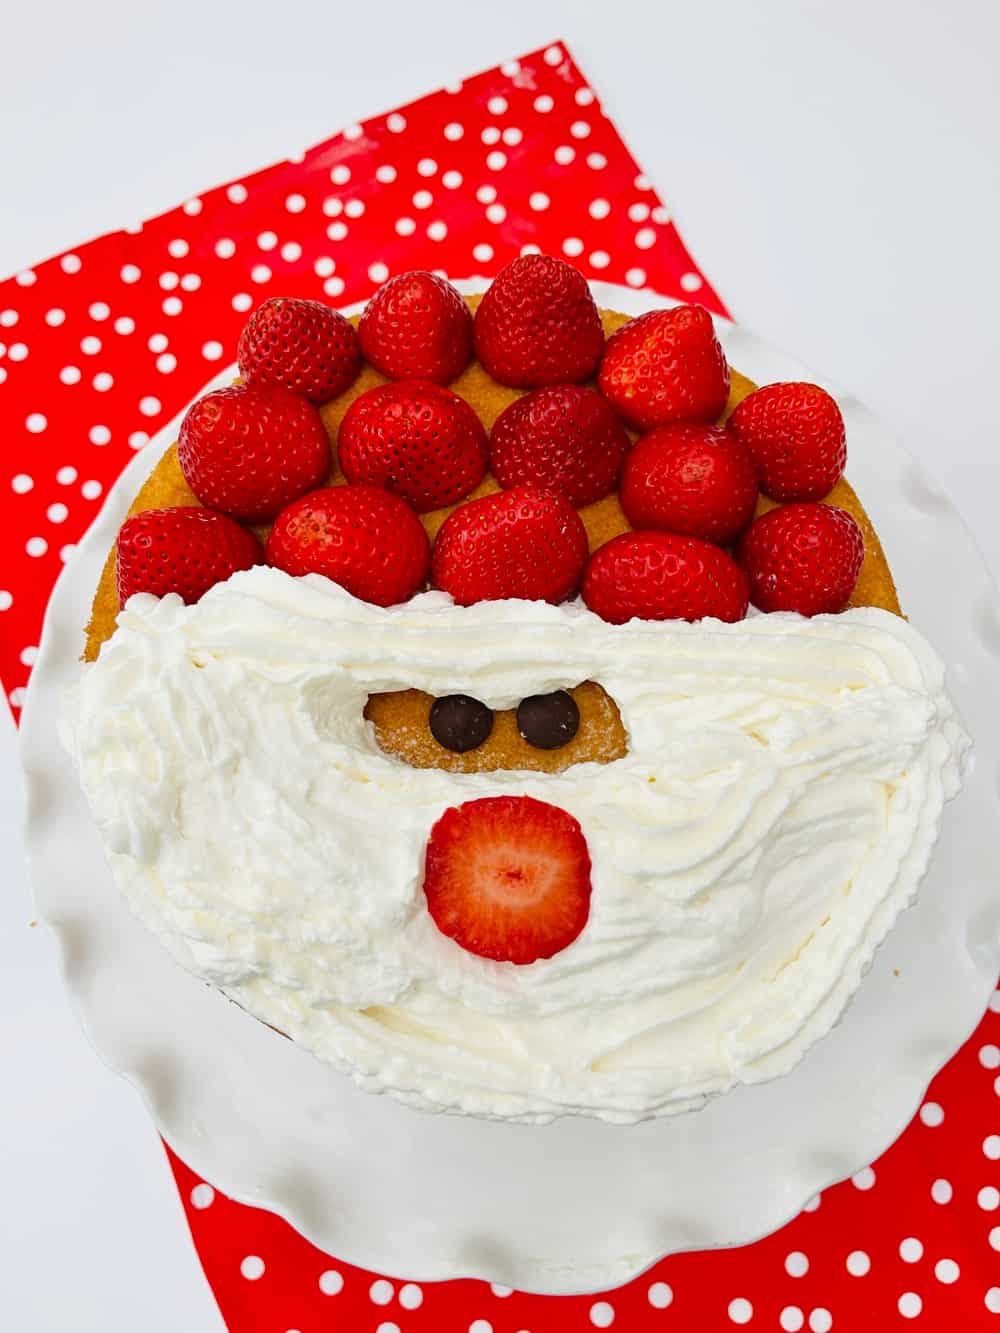 Santa Claus cake - Christmas cake decoration ideas - Kiddie Foodies